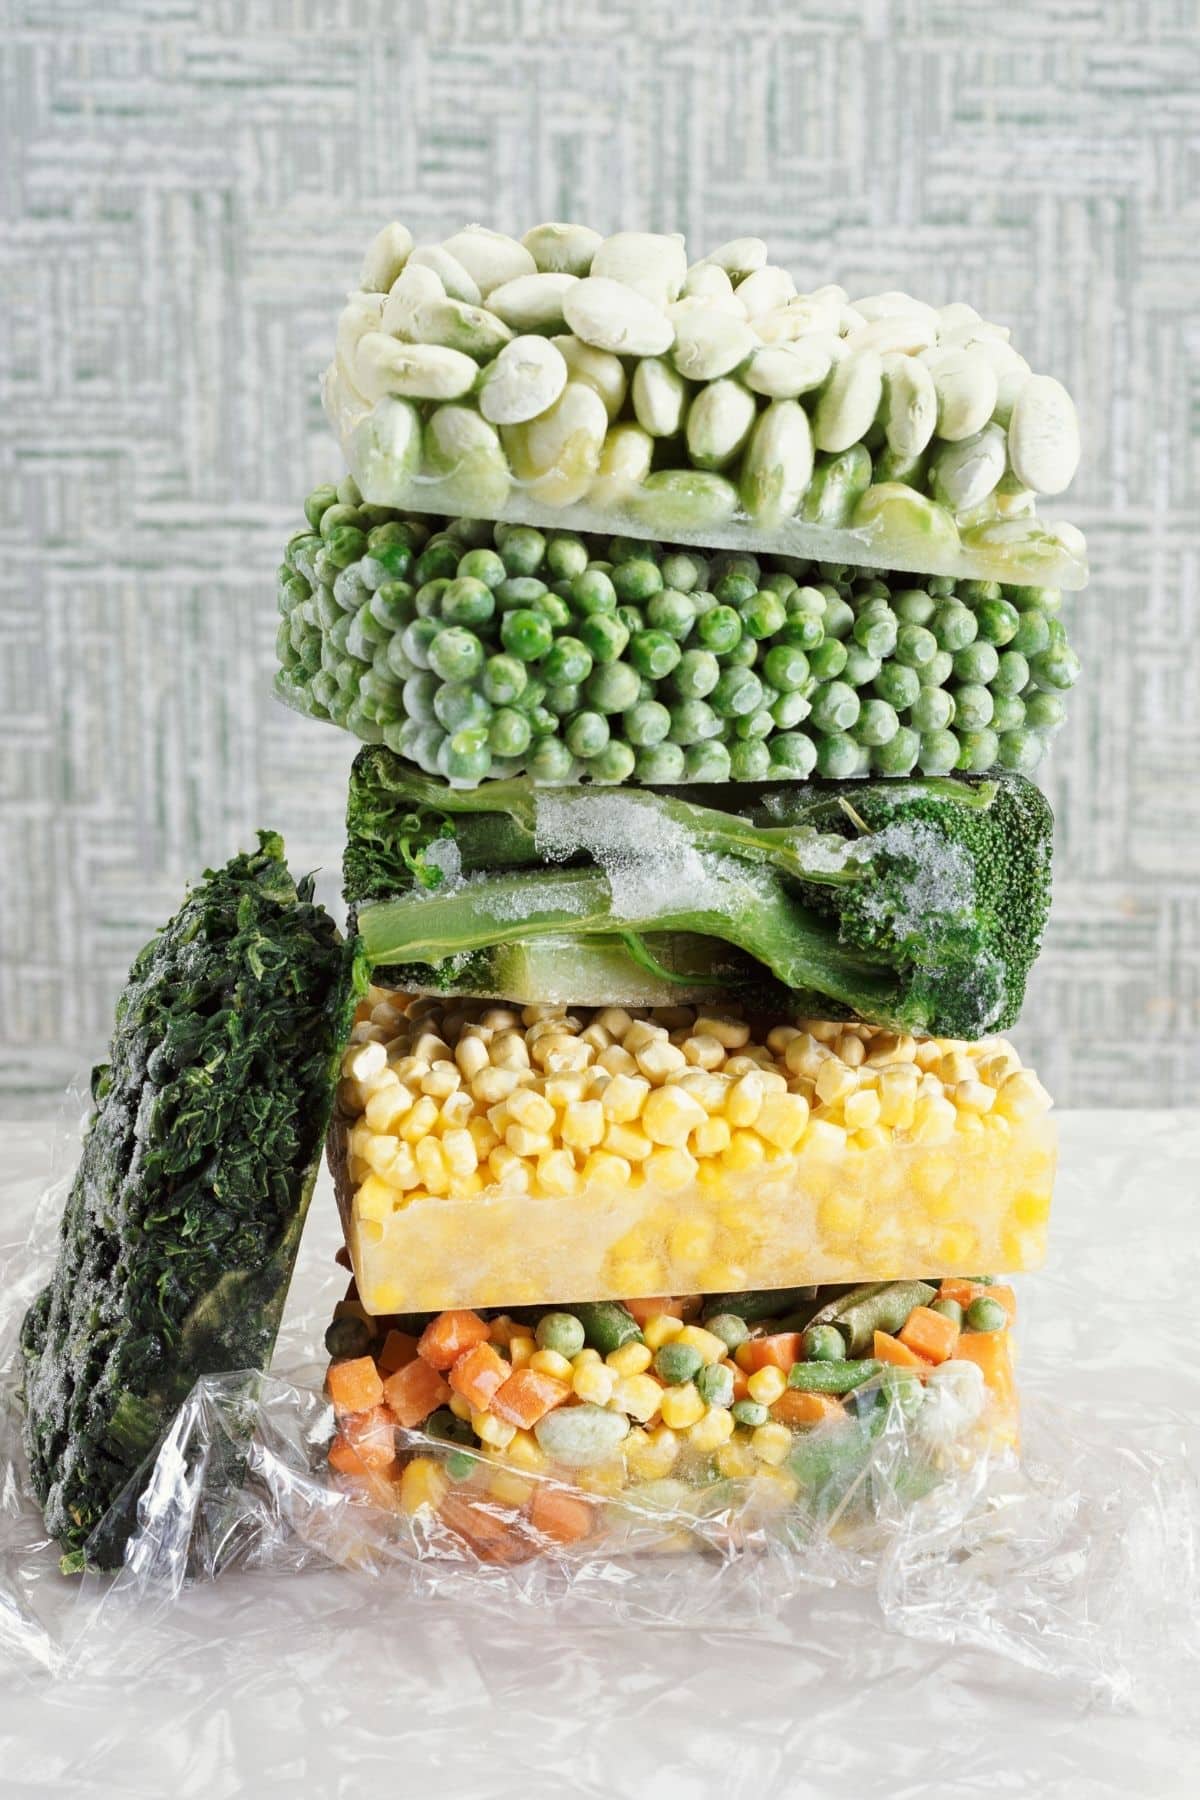 Frozen vegetables stacked together.